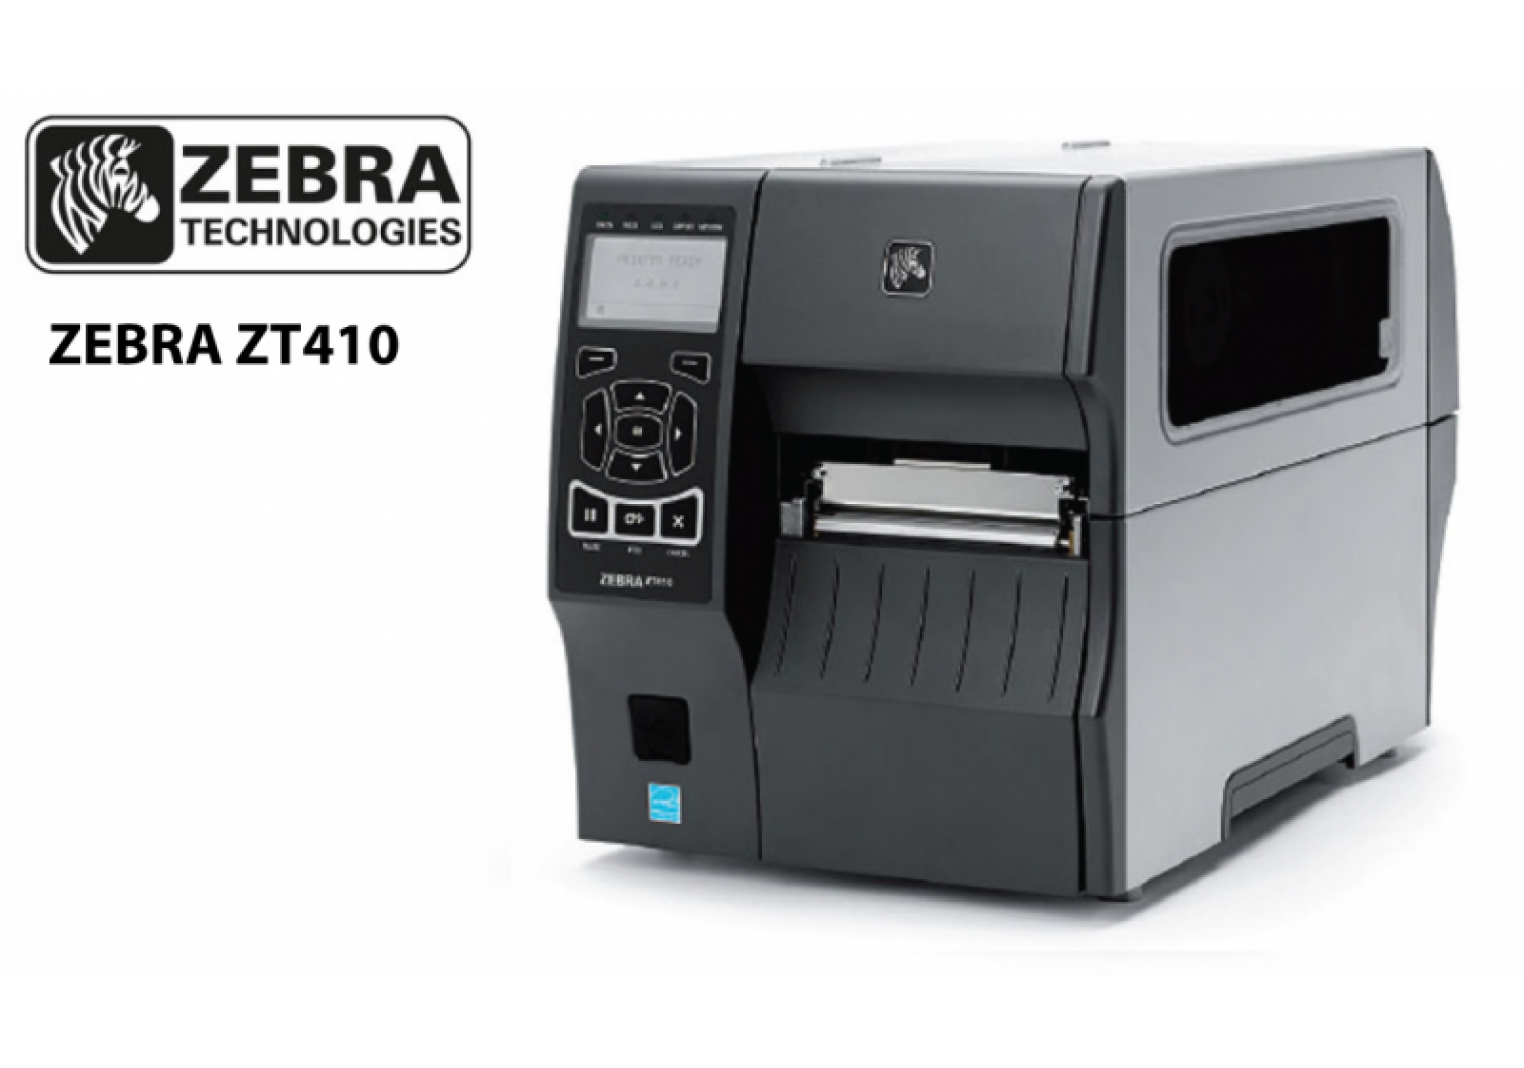 ZEBRA ZT410 เครื่องพิมพ์ บาร์โค้ด